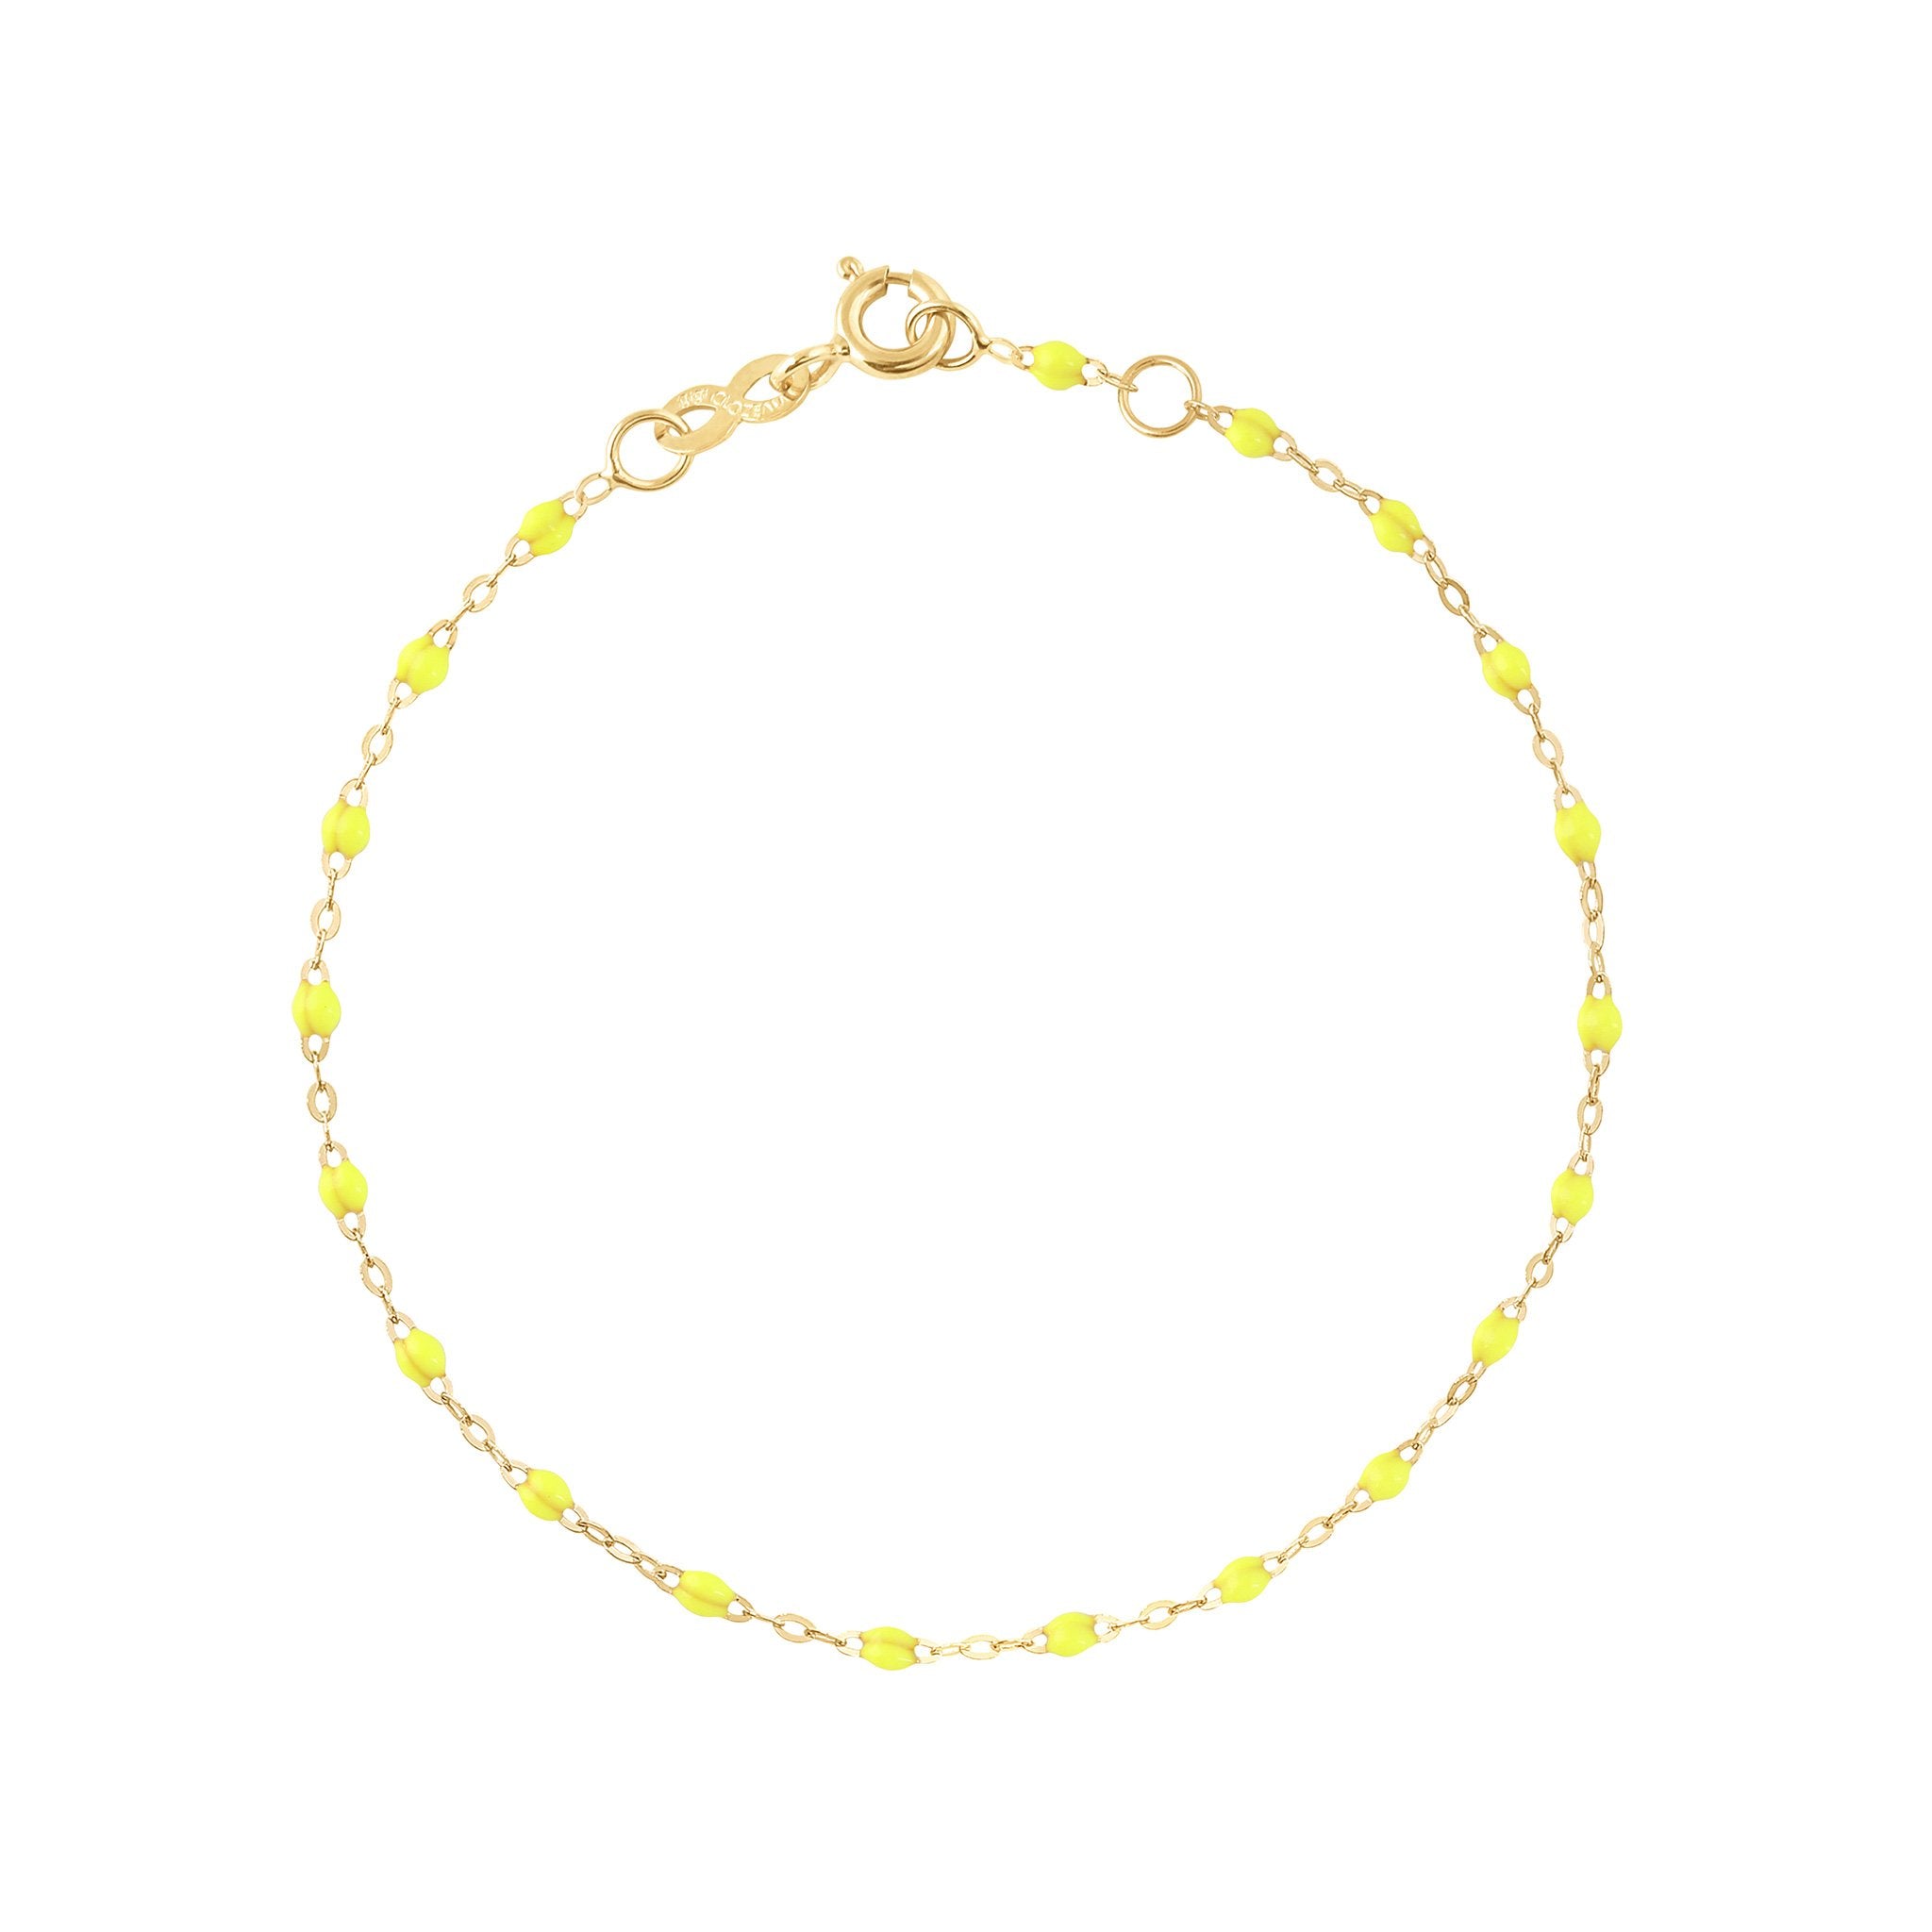 Gigi Clozeau - Bracelet jaune fluo Classique Gigi, or jaune, 17 cm